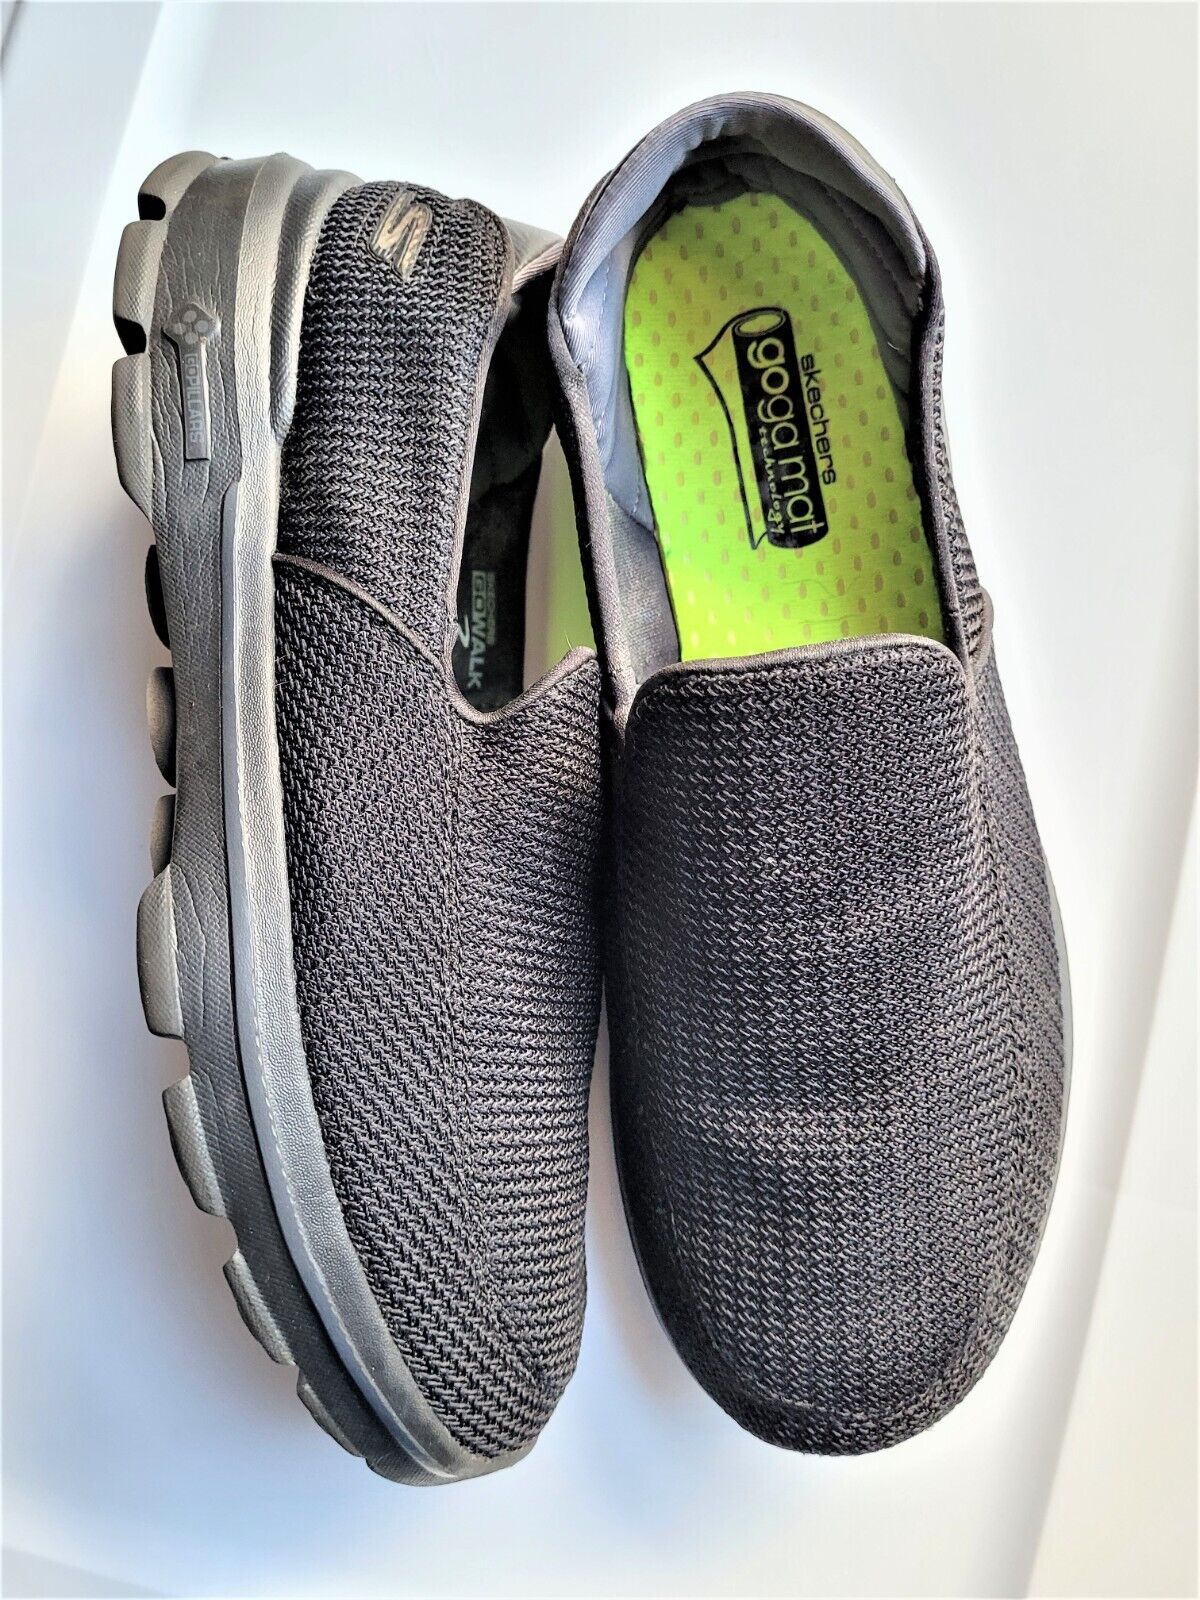 moordenaar Jong Dekbed Mens Skechers Go Walk 3 Goga Mat Black Walking Shoes 53980 Sz 10.5 VGC  Comfort | eBay